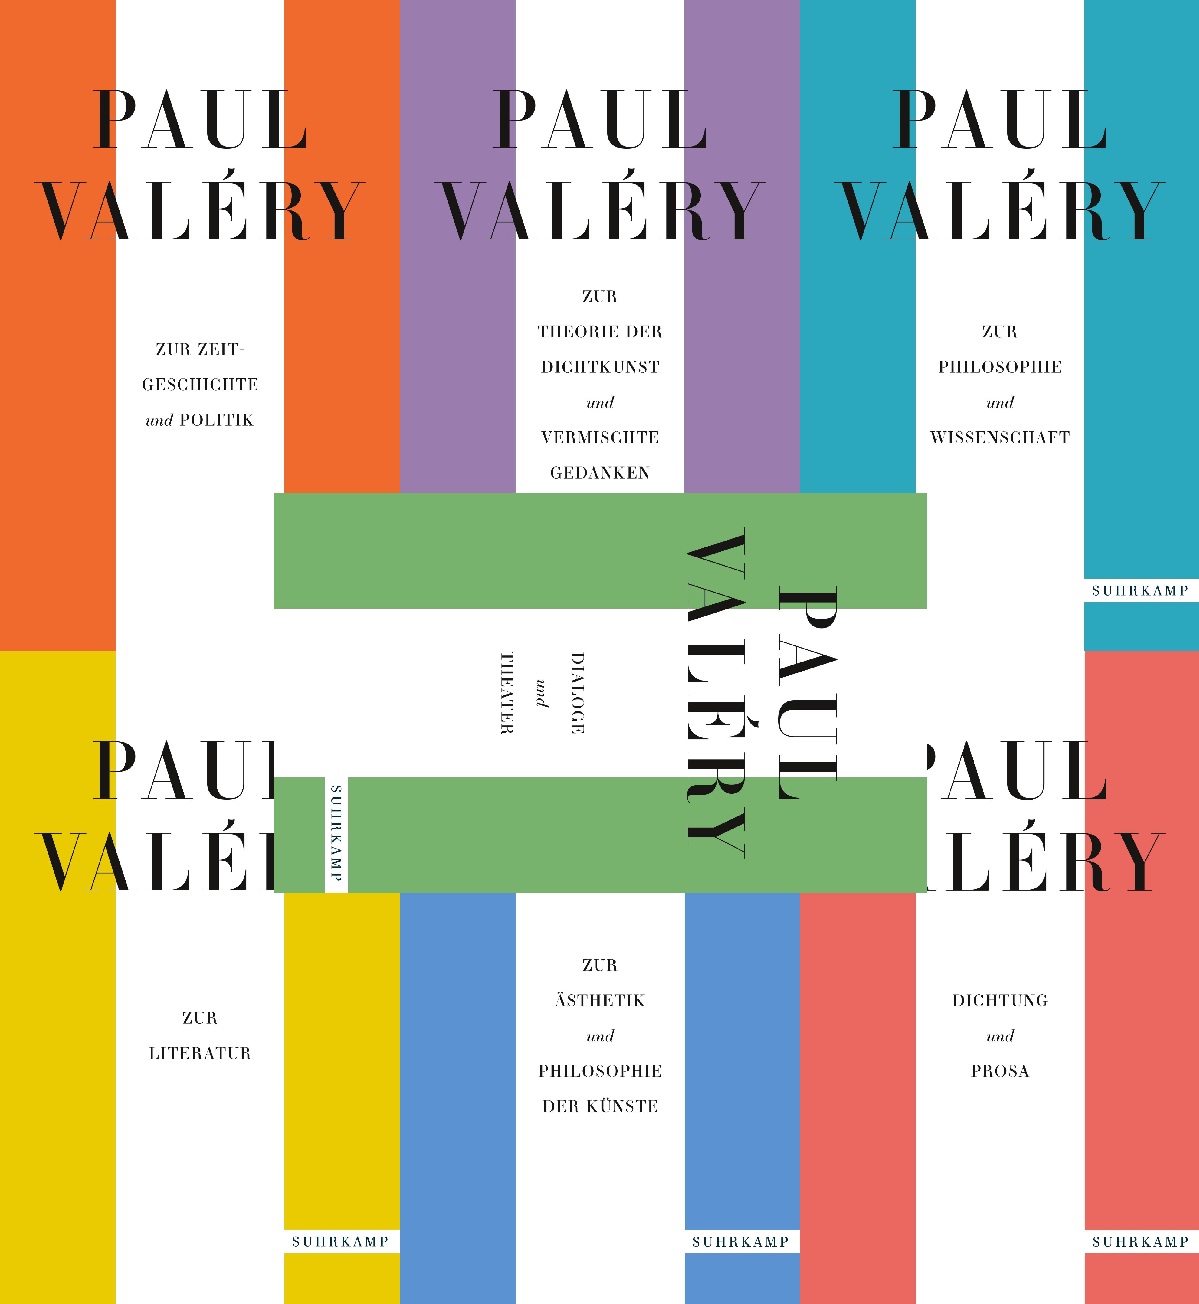 Paul Valéry Werke. Frankfurter Ausgabe in 7 Bänden